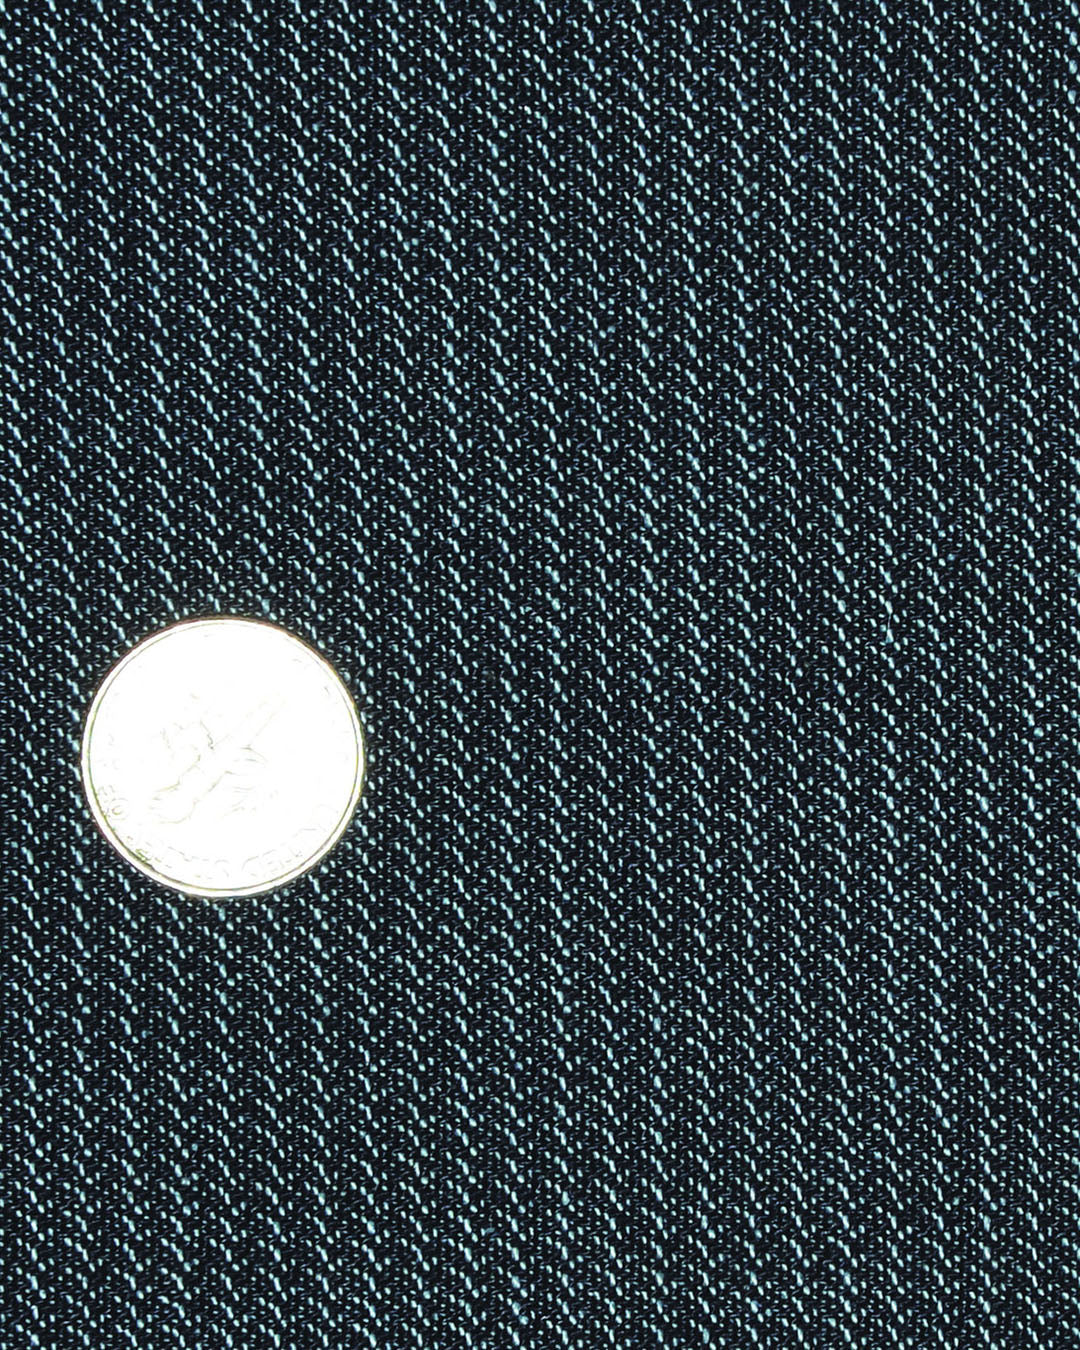 Noragi in Textured White on Phantom Black Stripes